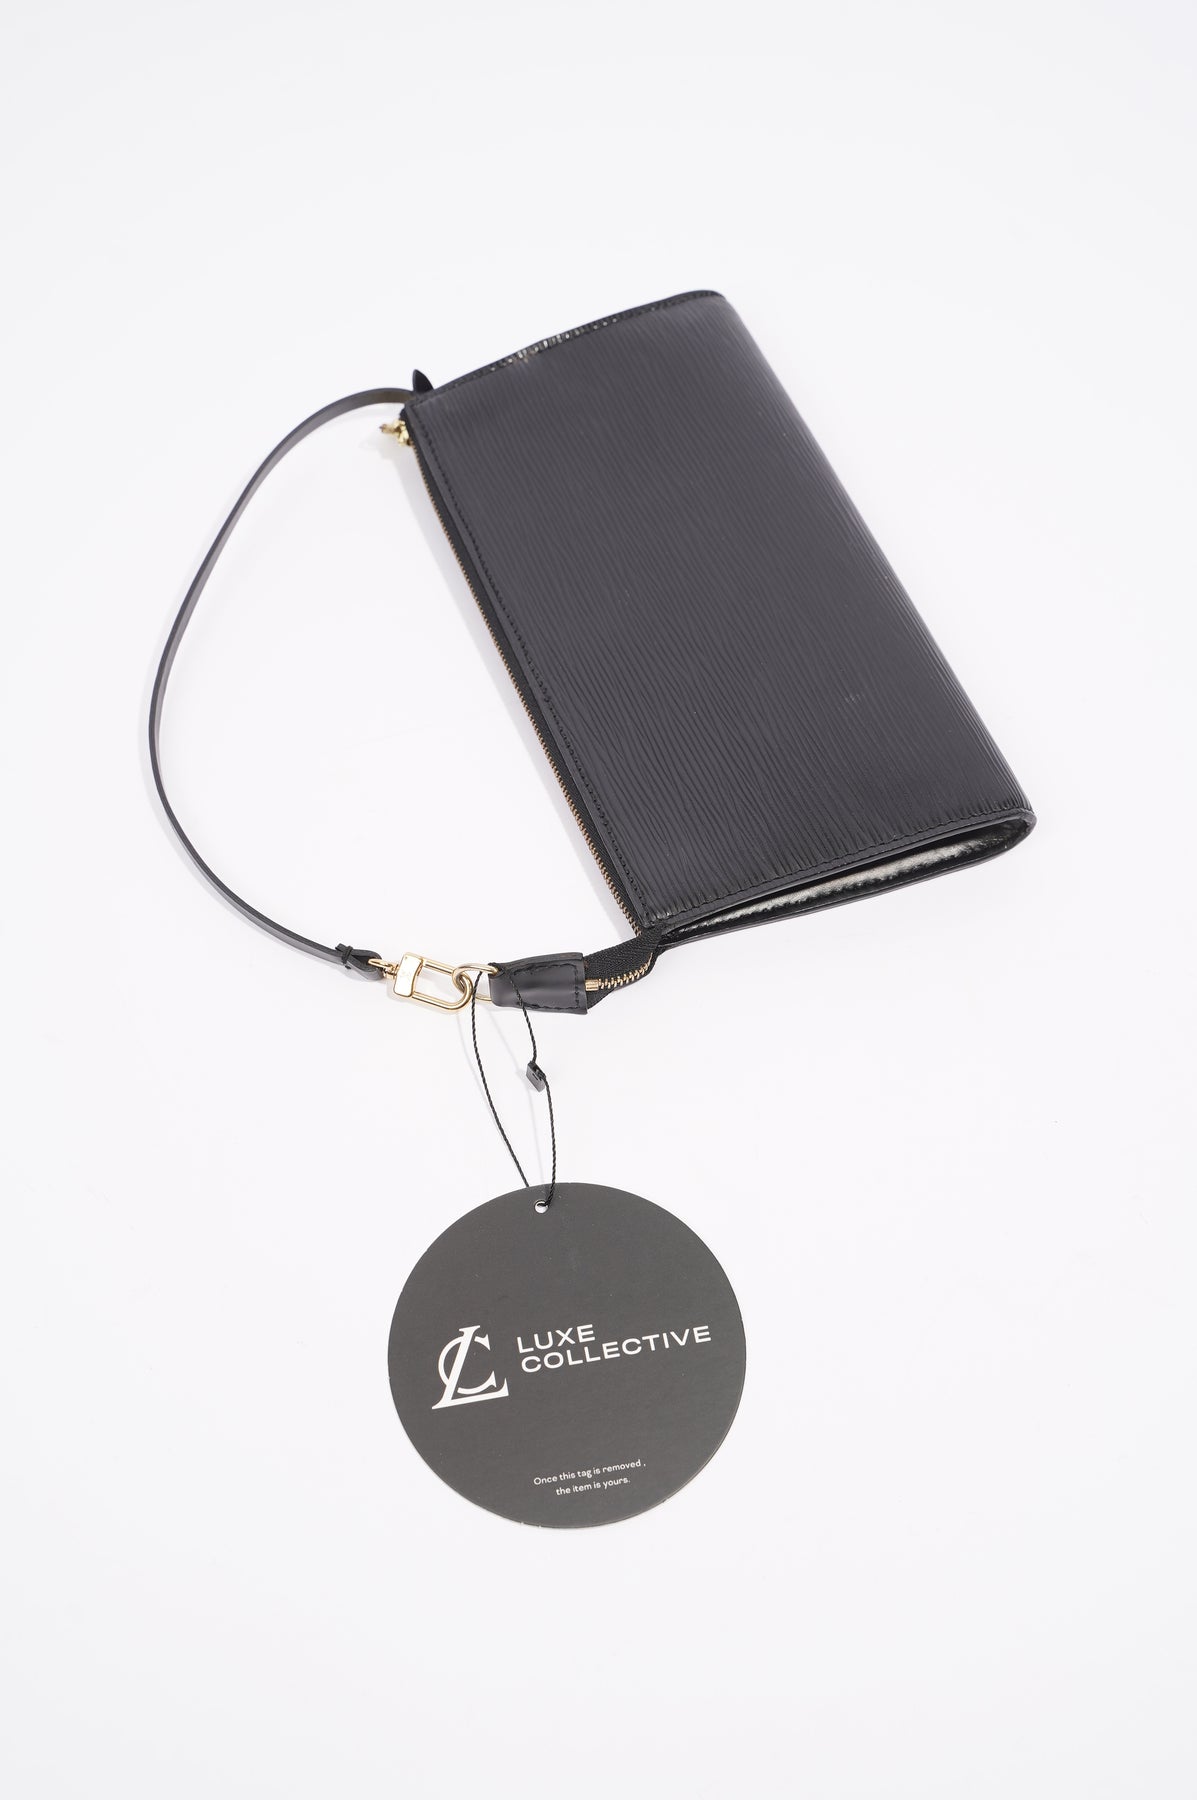 Pochette accessoire leather handbag Louis Vuitton Black in Leather -  19535975